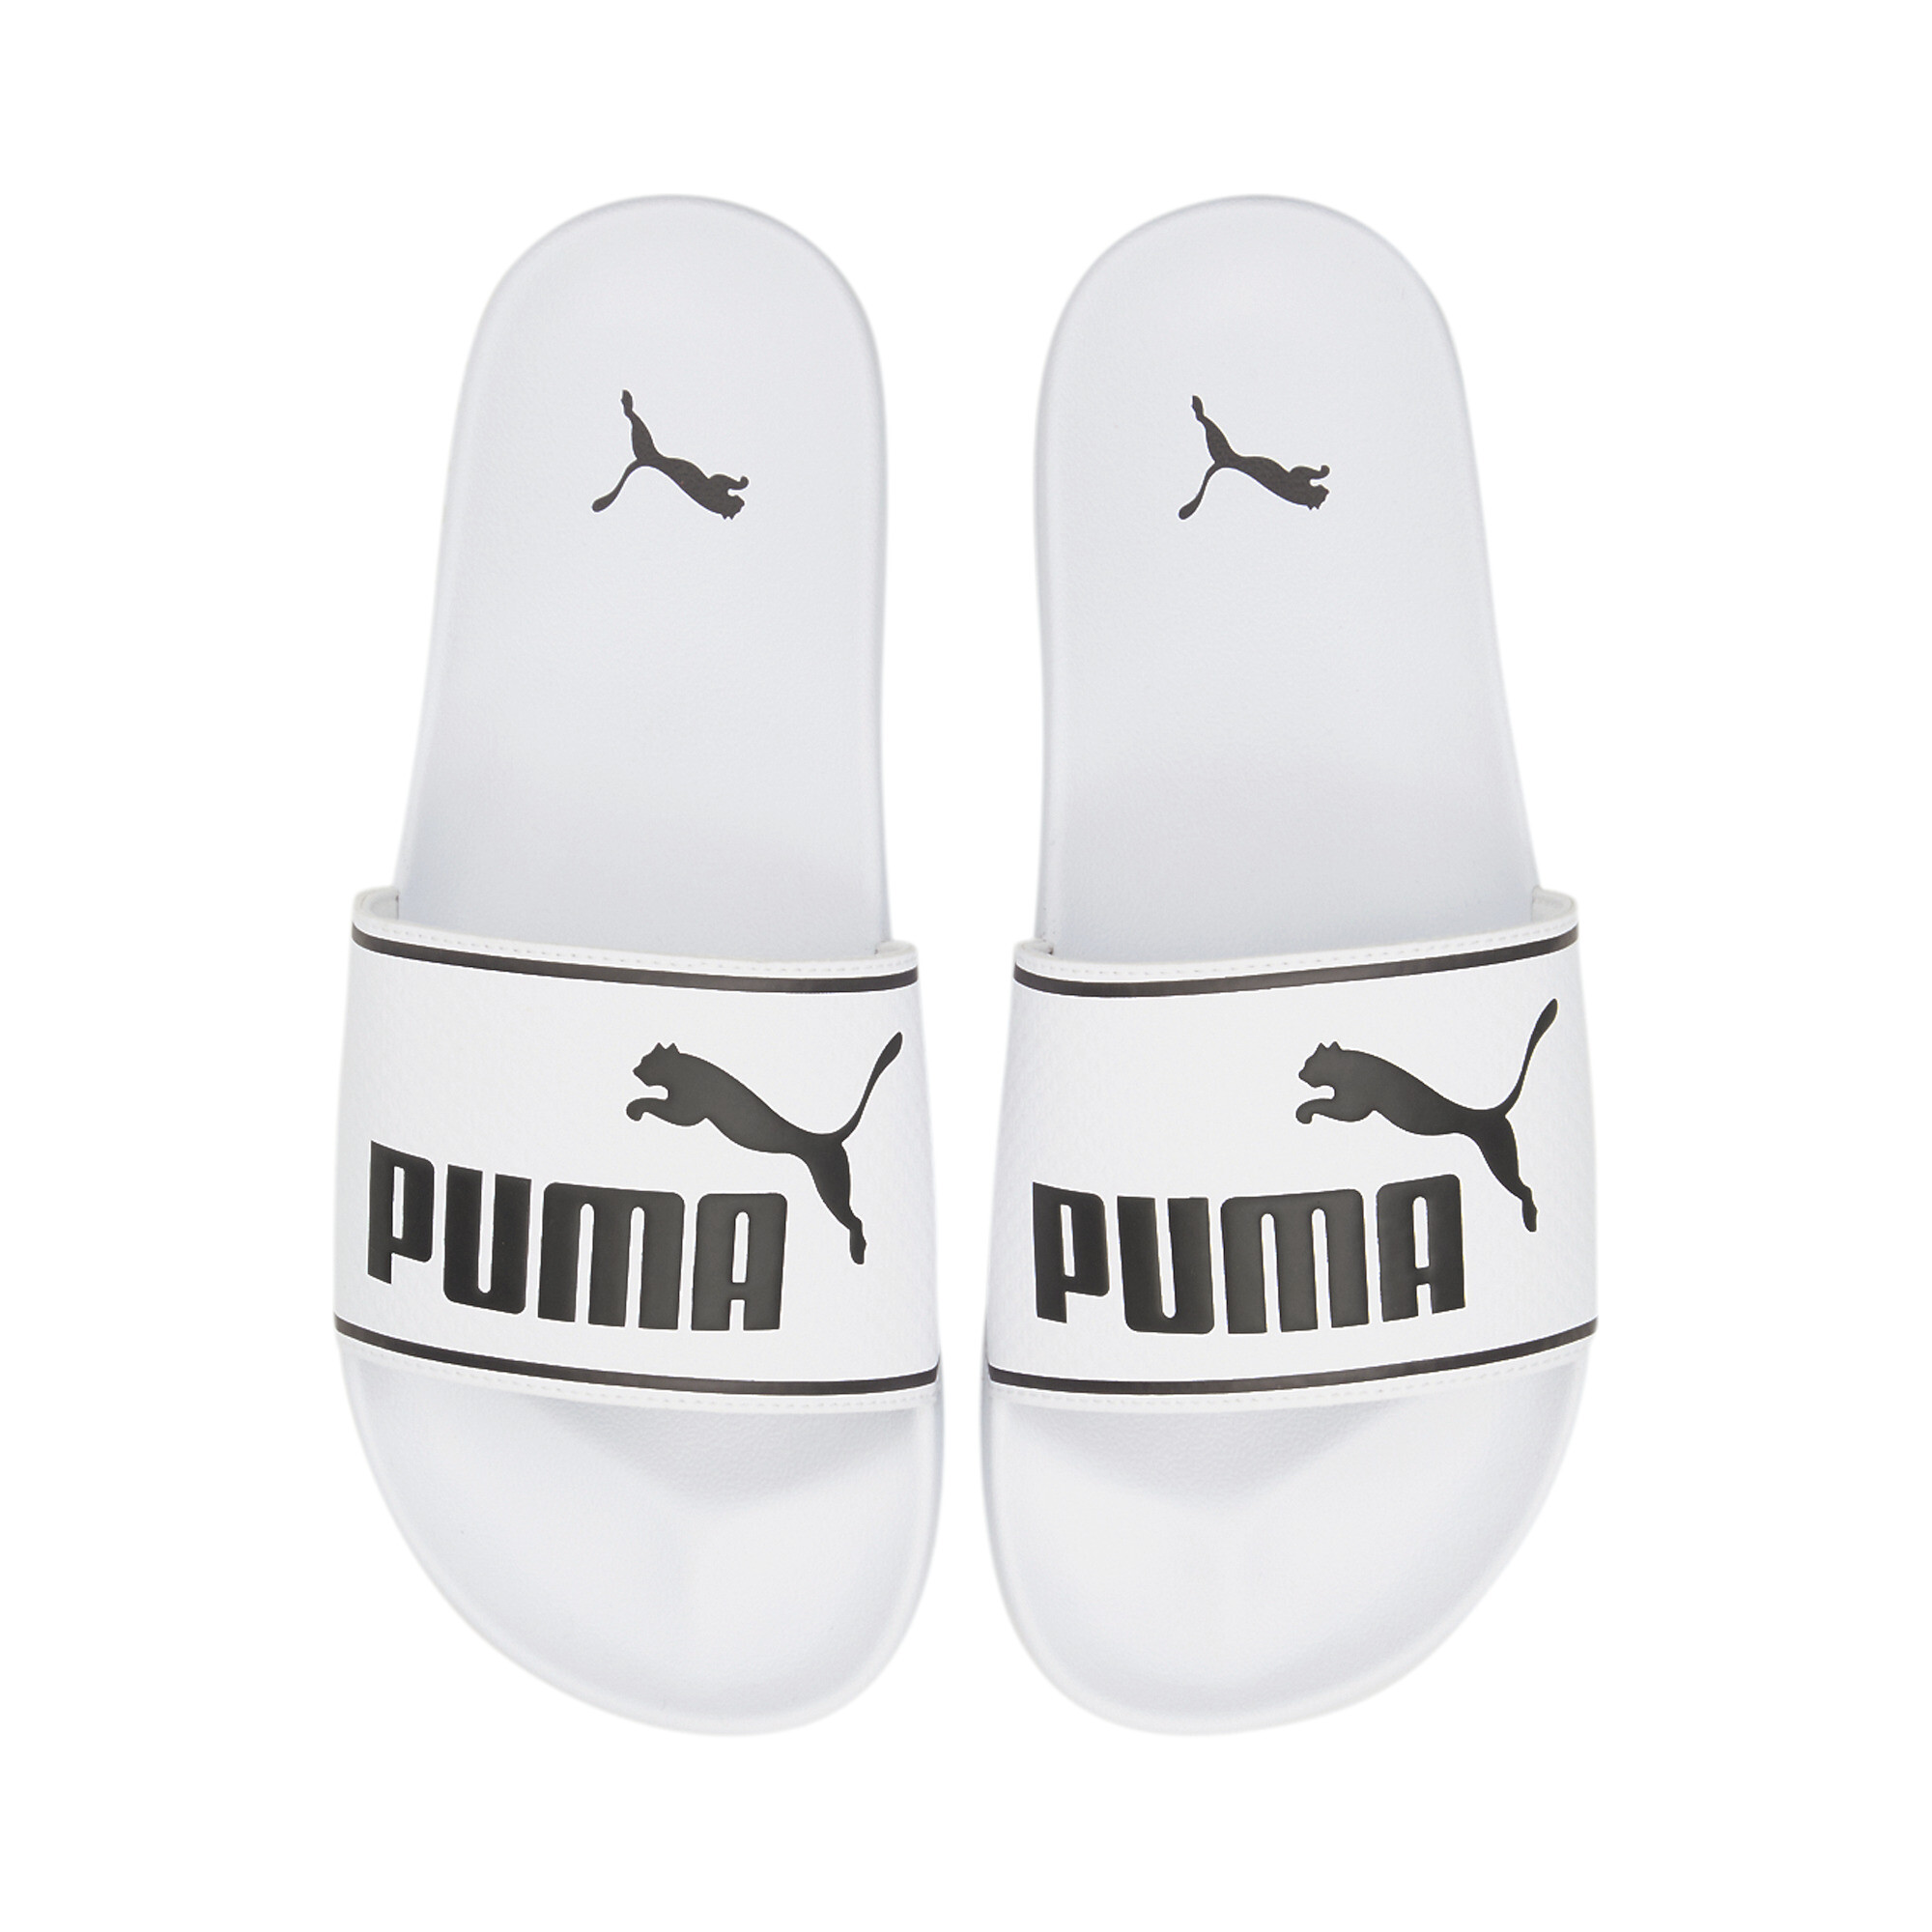 Men's PUMA Leadcat 2.0 Sandals In White, Size EU 46